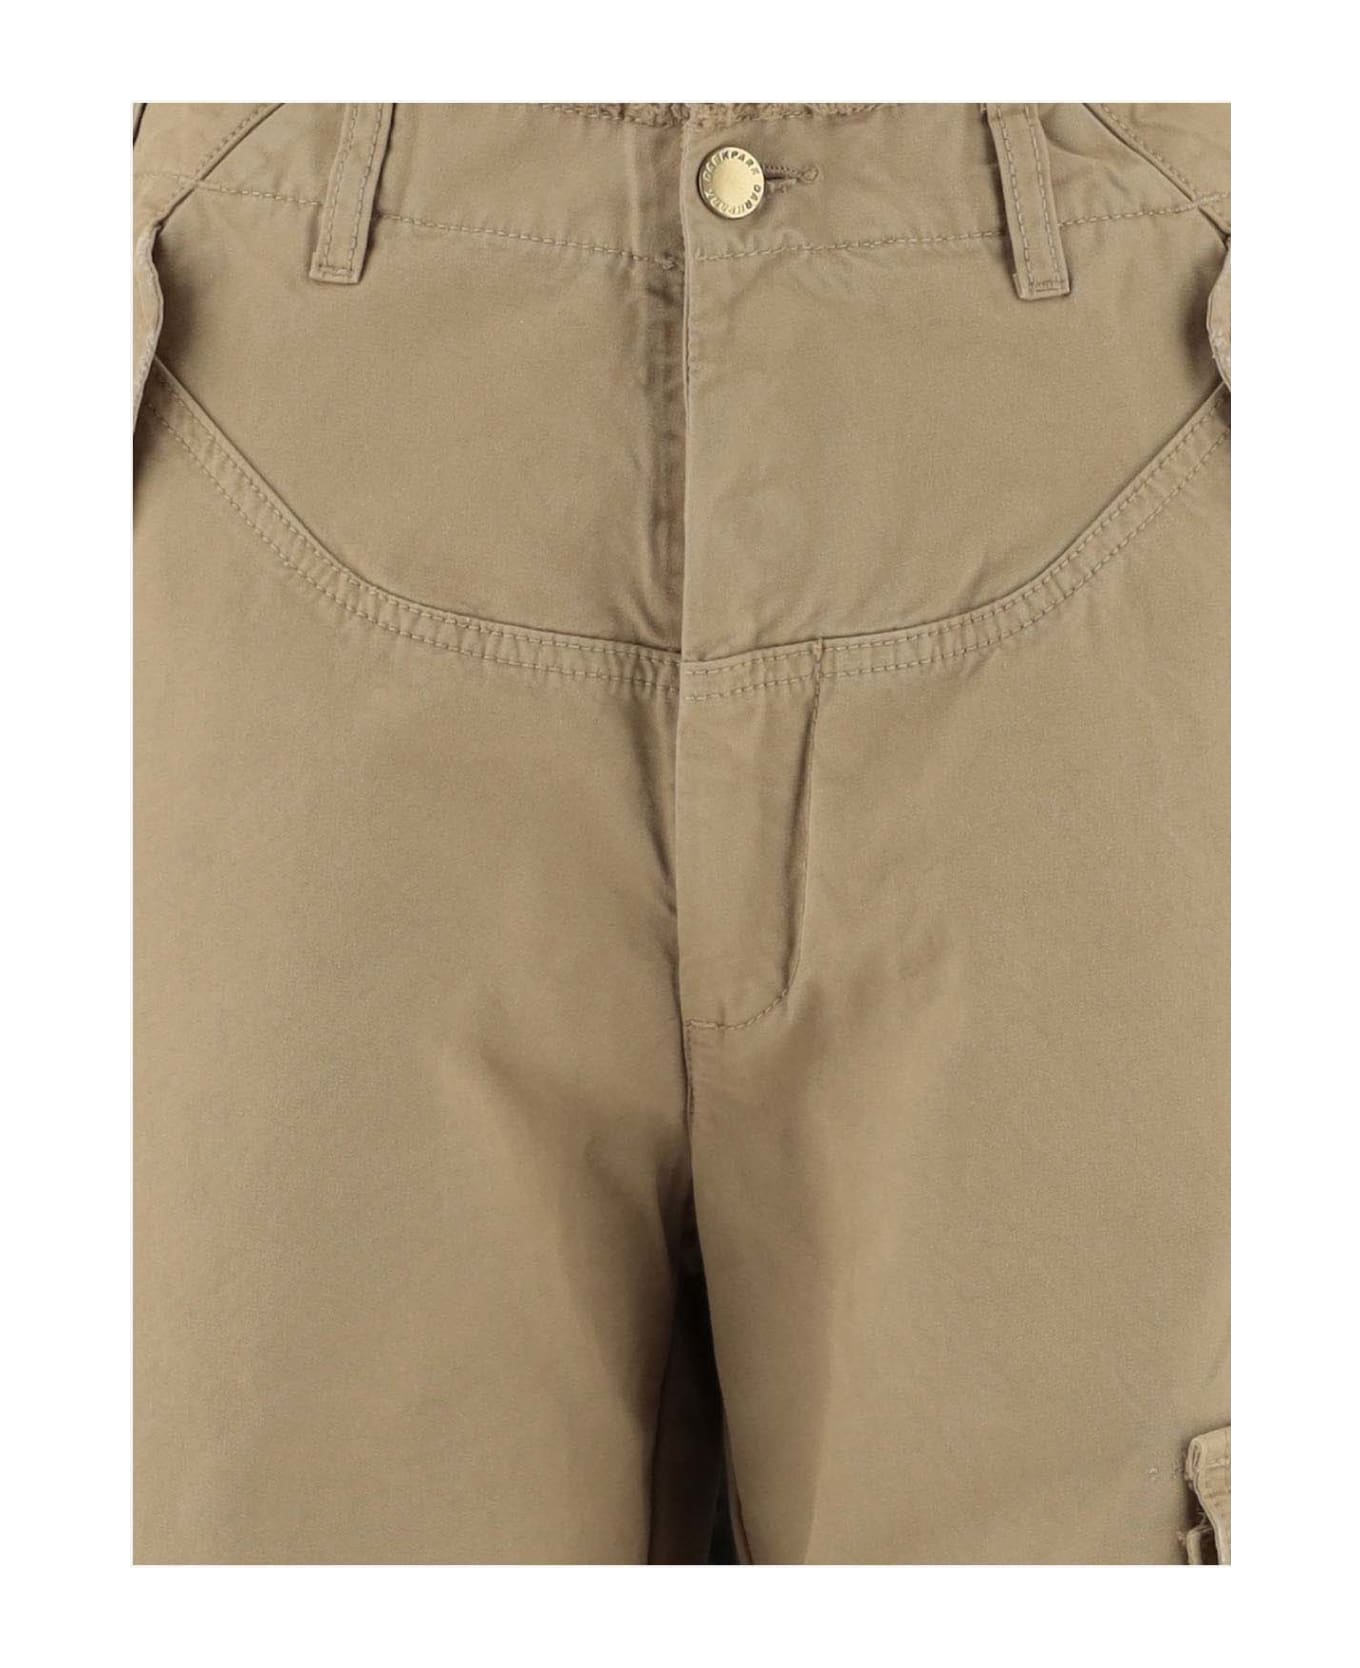 DARKPARK Cotton Cargo Pants - Beige